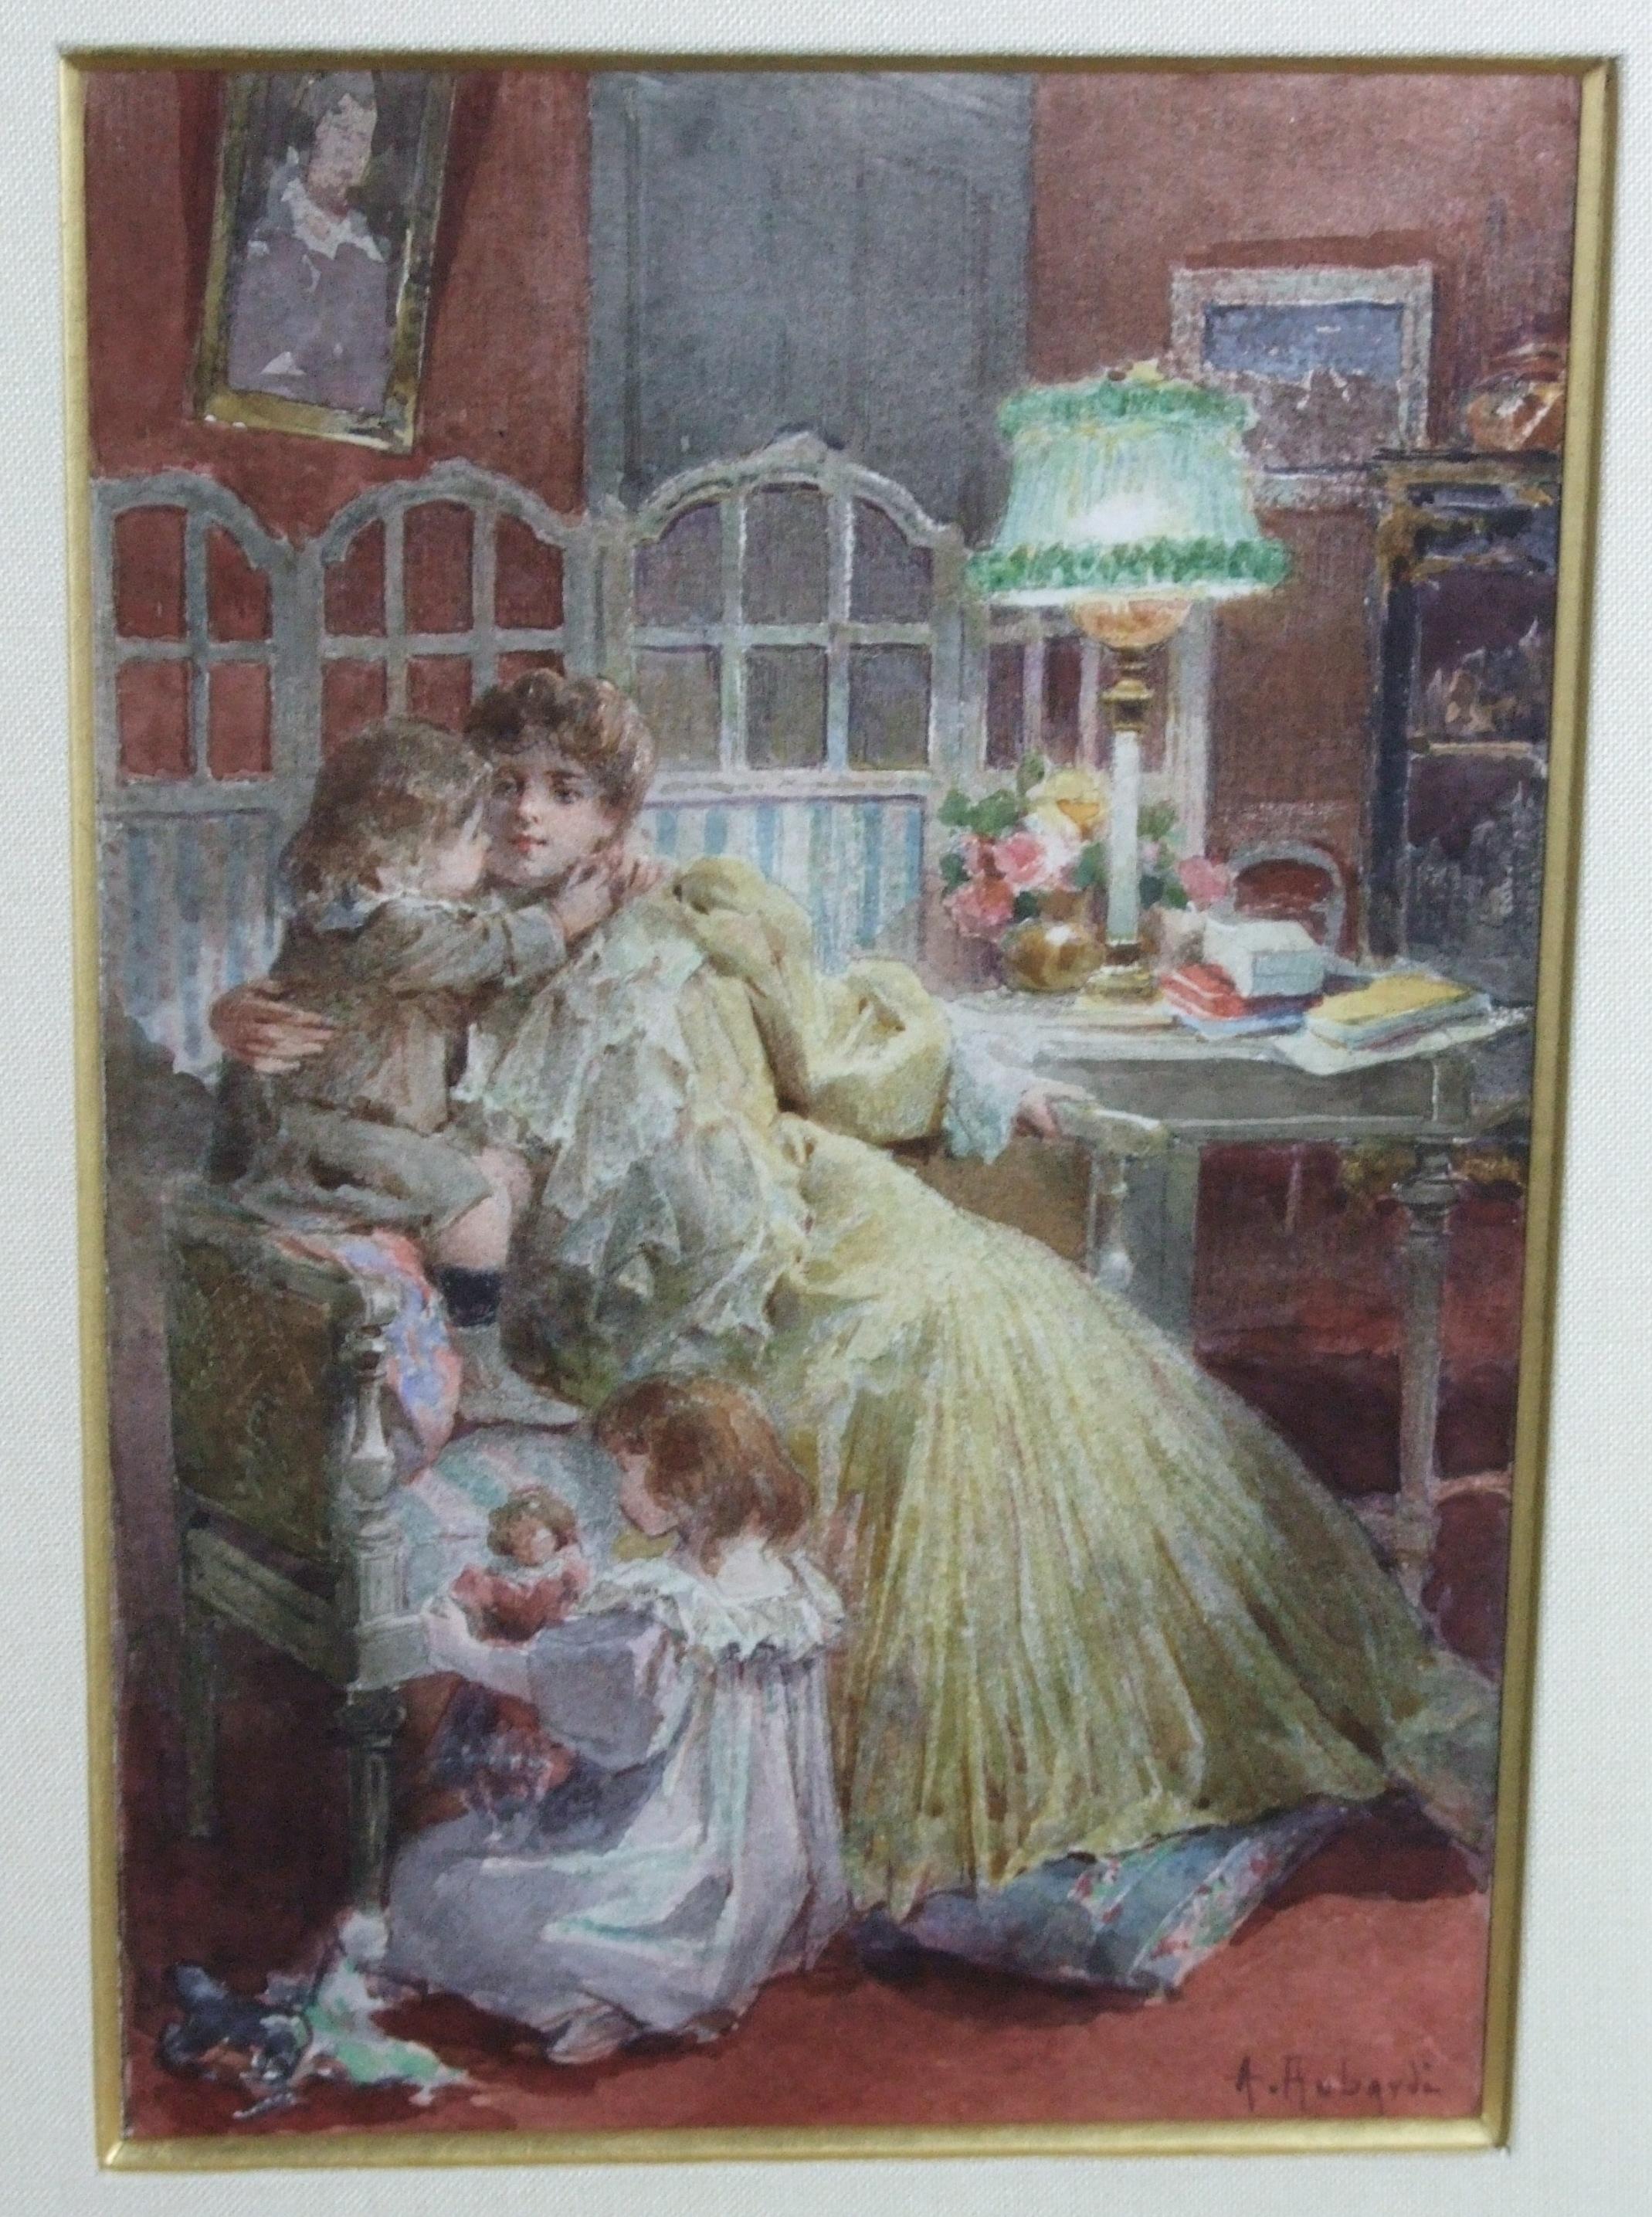 Maternité, XIX c. - watercolor, 17x12 cm., framed - Art by Alcide Robaudi